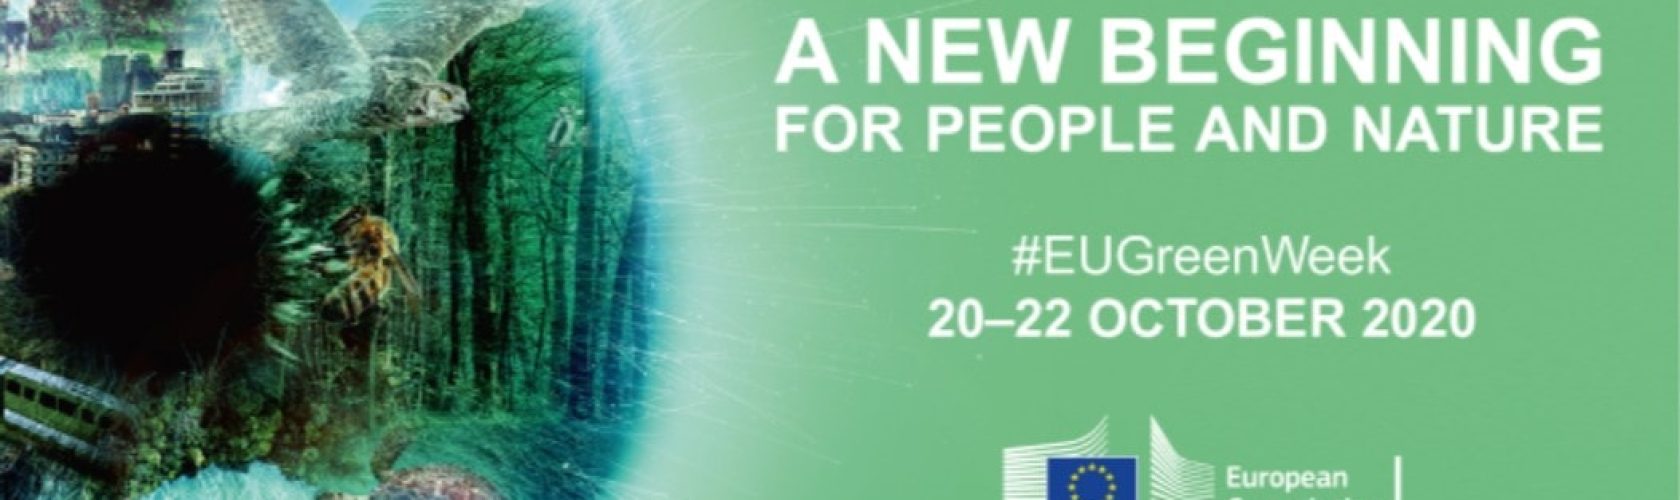 EU Green Week 2020_2020-10-06_2733